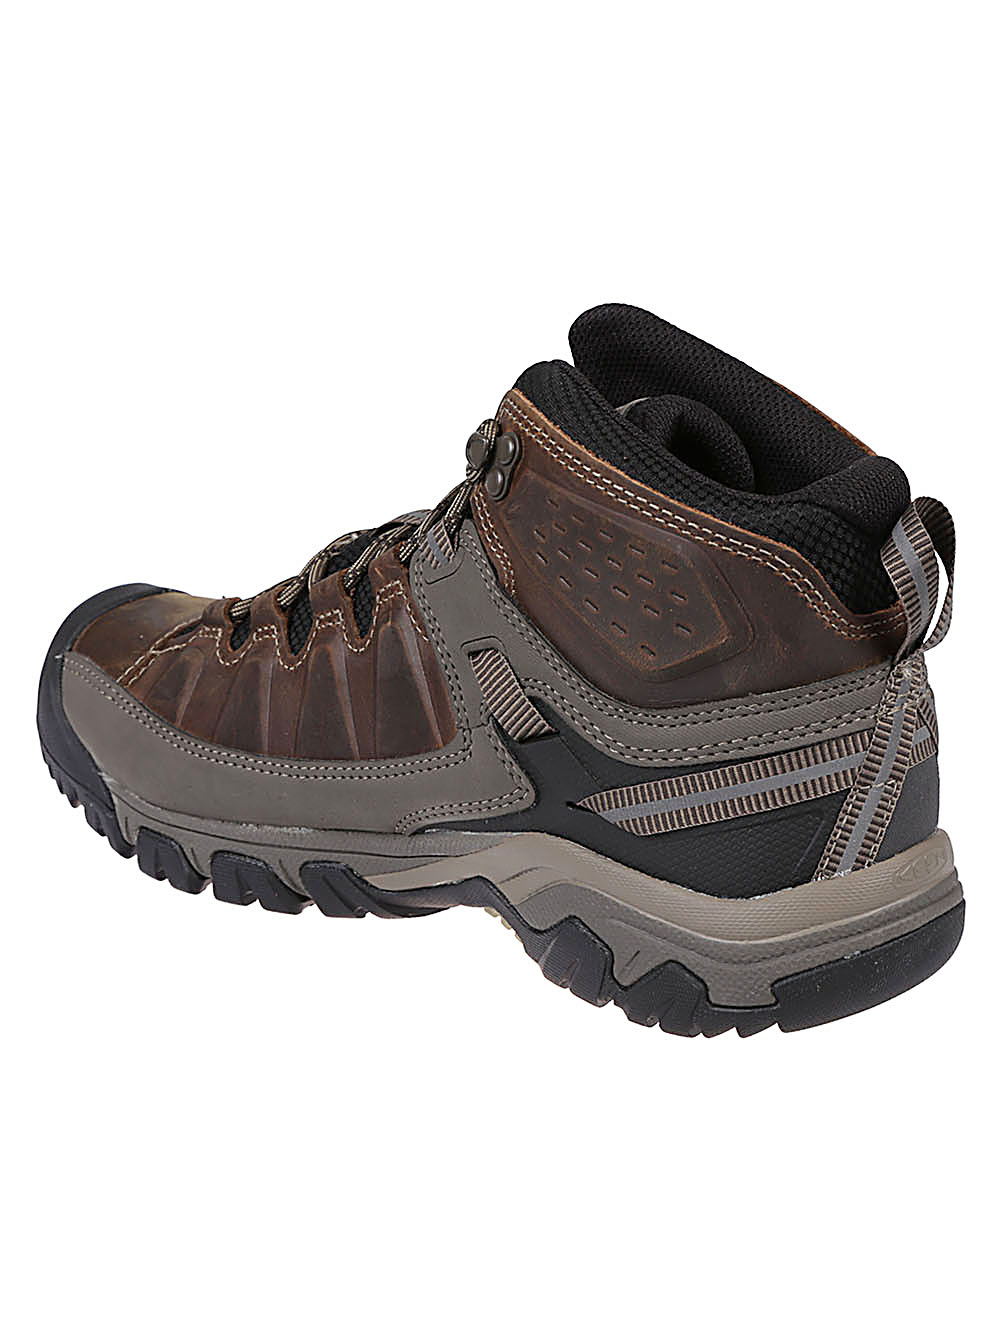 Keen KEEN- Targhee Iii Waterproof Mid Hiking Boots